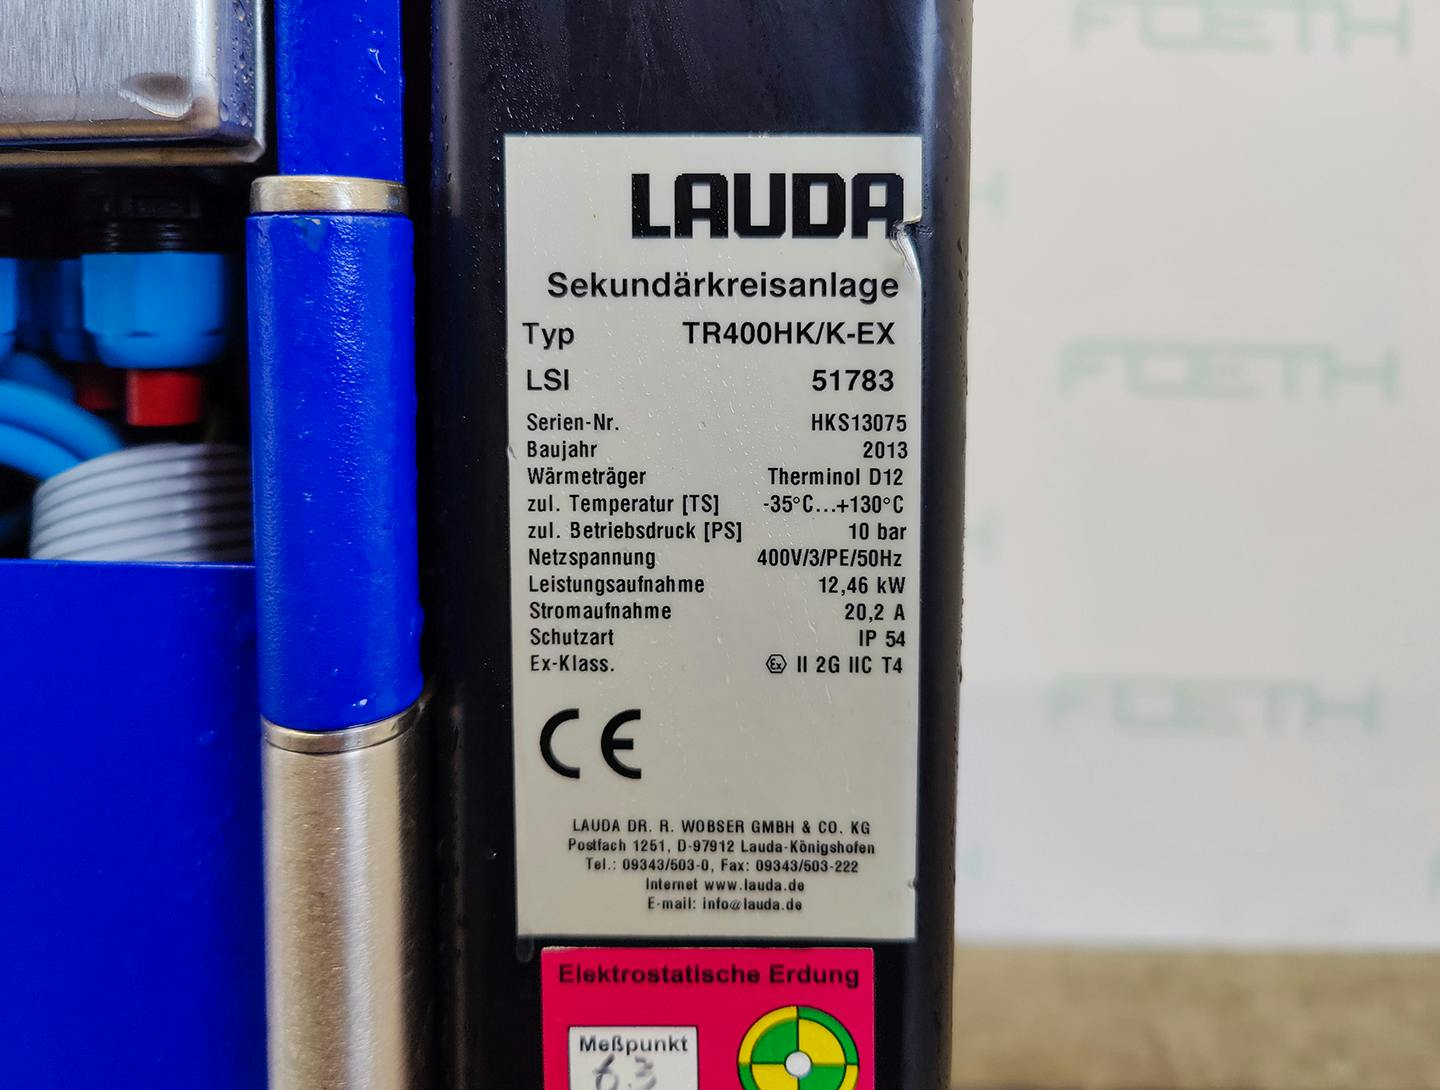 Lauda TR400 HK/K-EX "secondary circuit system" - Temperature control unit - image 6